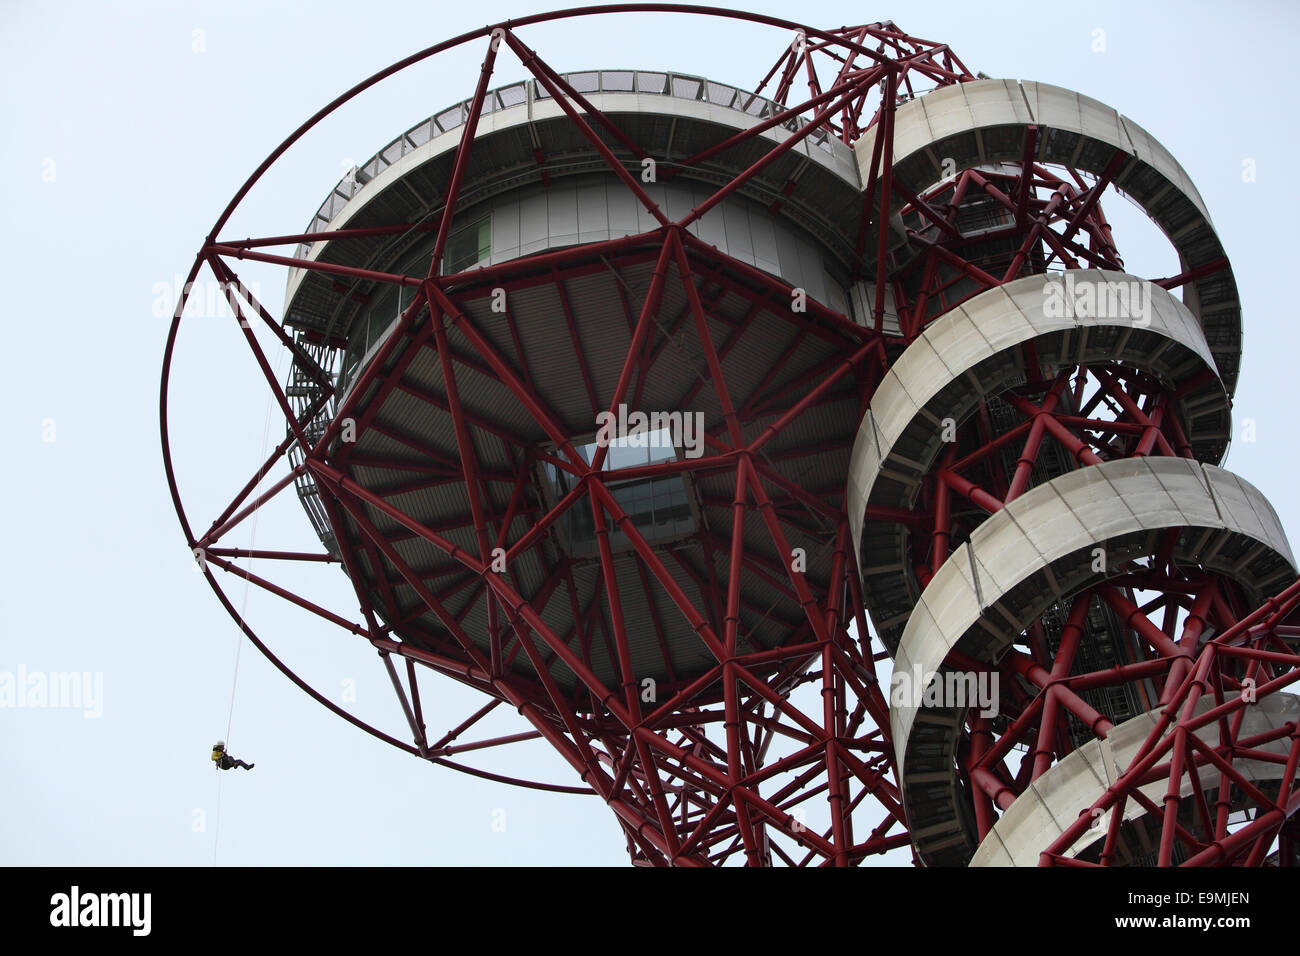 La descente en rappel de l'Arcelor Mittal en orbite autour de la sculpture la plus haute du Royaume-Uni dans le parc Queen Elizabeth Olympic Park. Stratford. Londres Banque D'Images